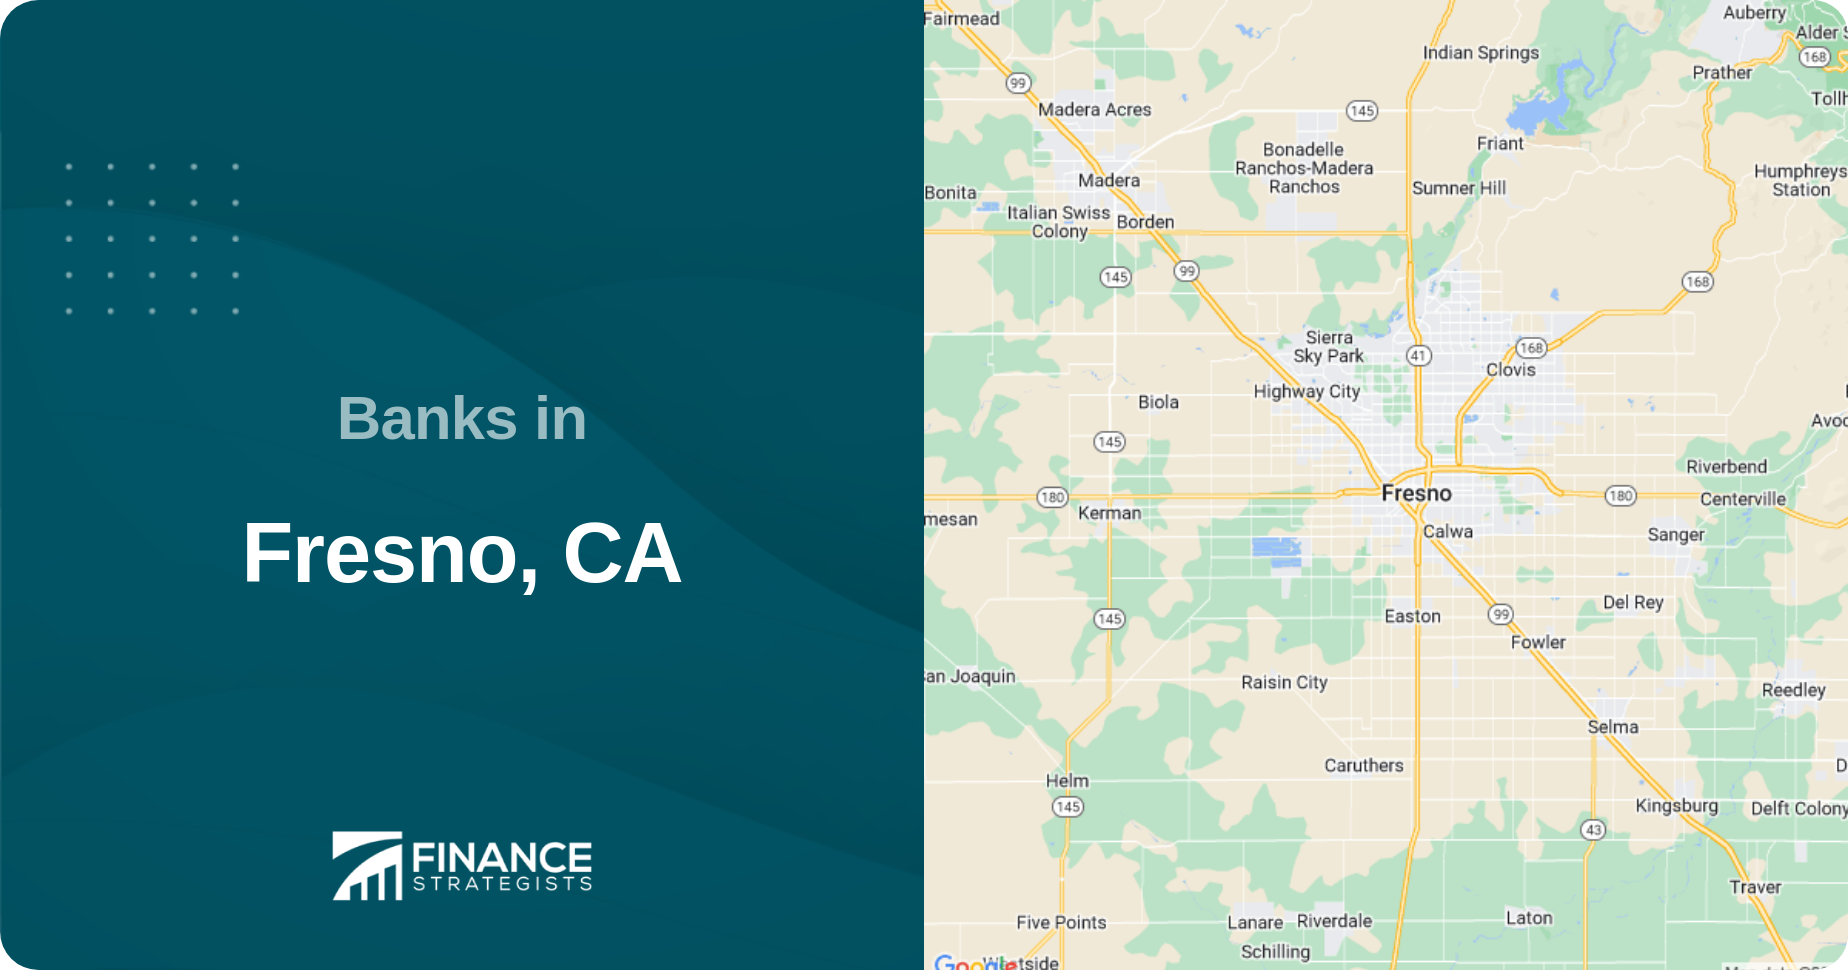 Banks in Fresno, CA